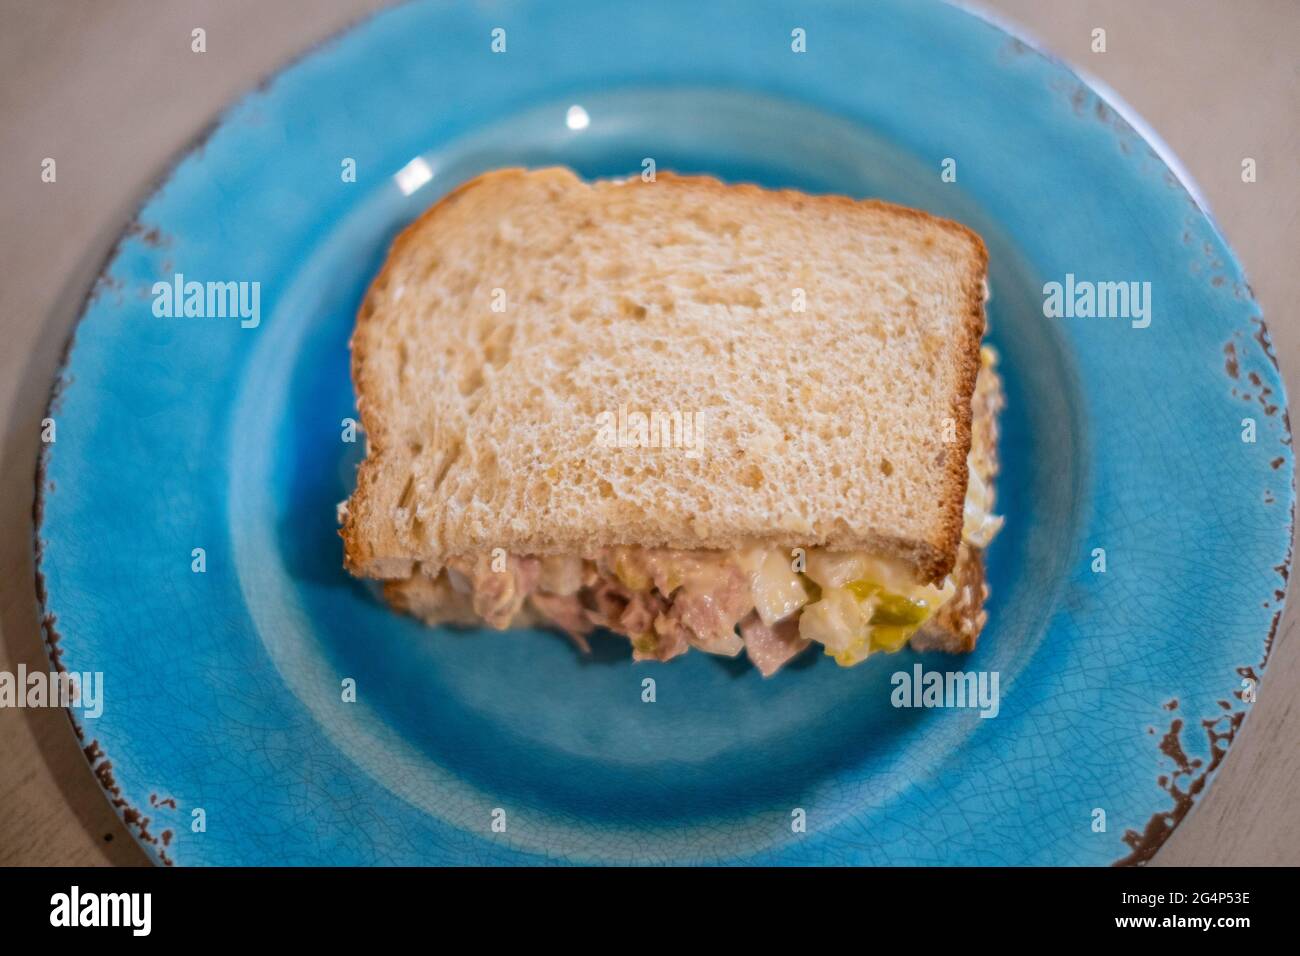 La mitad de un sándwich de atún con pan de oatnut en un plato azul. Primer plano. Foto de stock